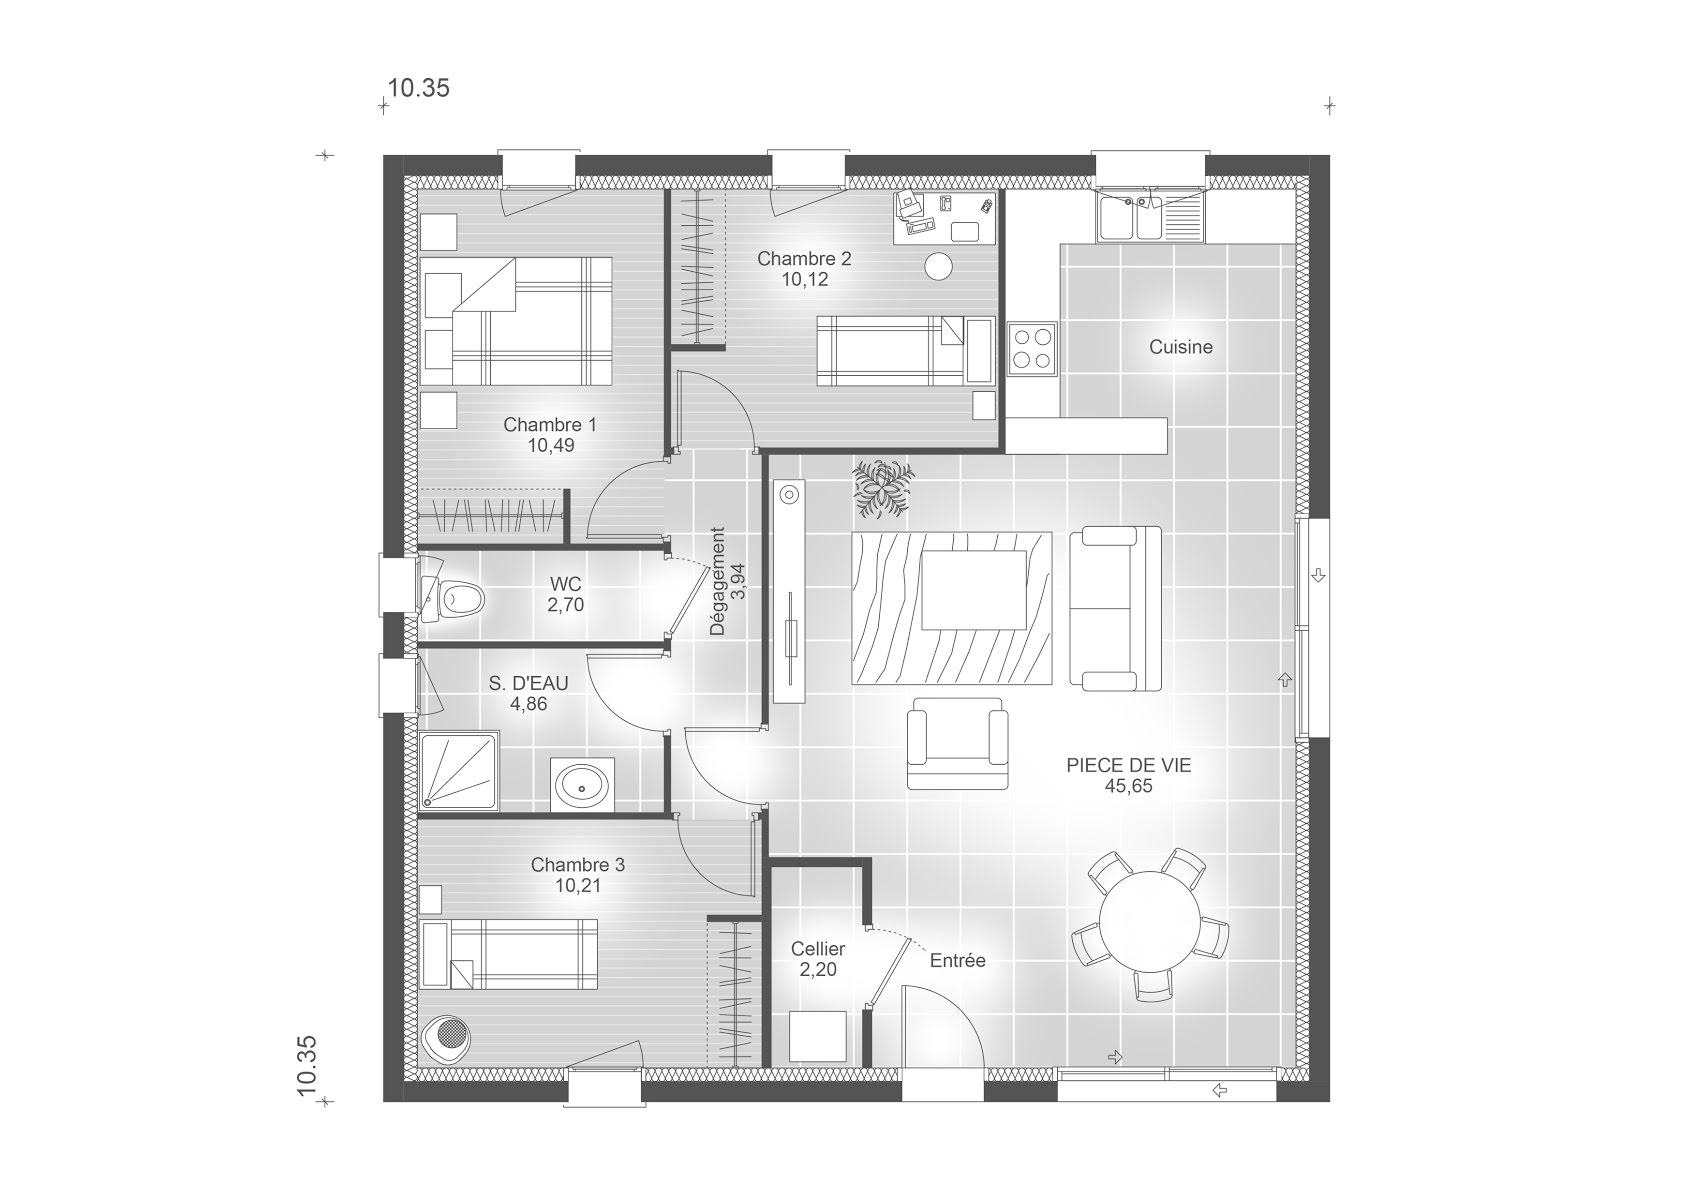 Vente maison 1 pièce 90 m2